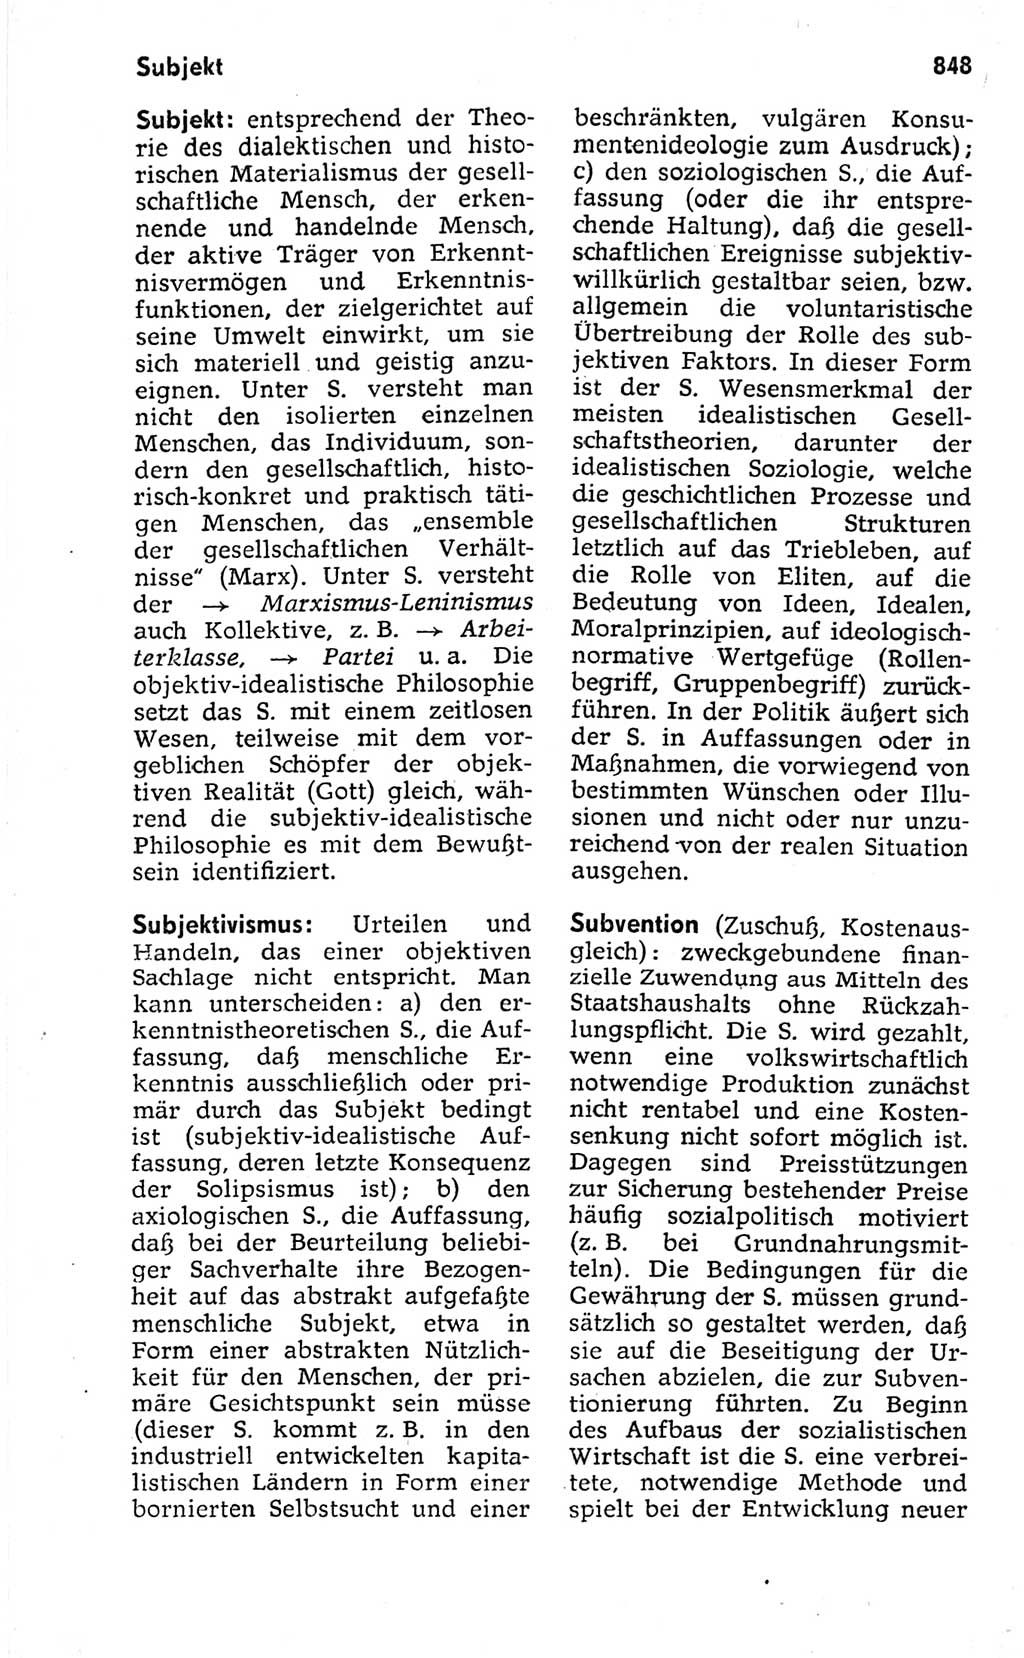 Kleines politisches Wörterbuch [Deutsche Demokratische Republik (DDR)] 1973, Seite 848 (Kl. pol. Wb. DDR 1973, S. 848)